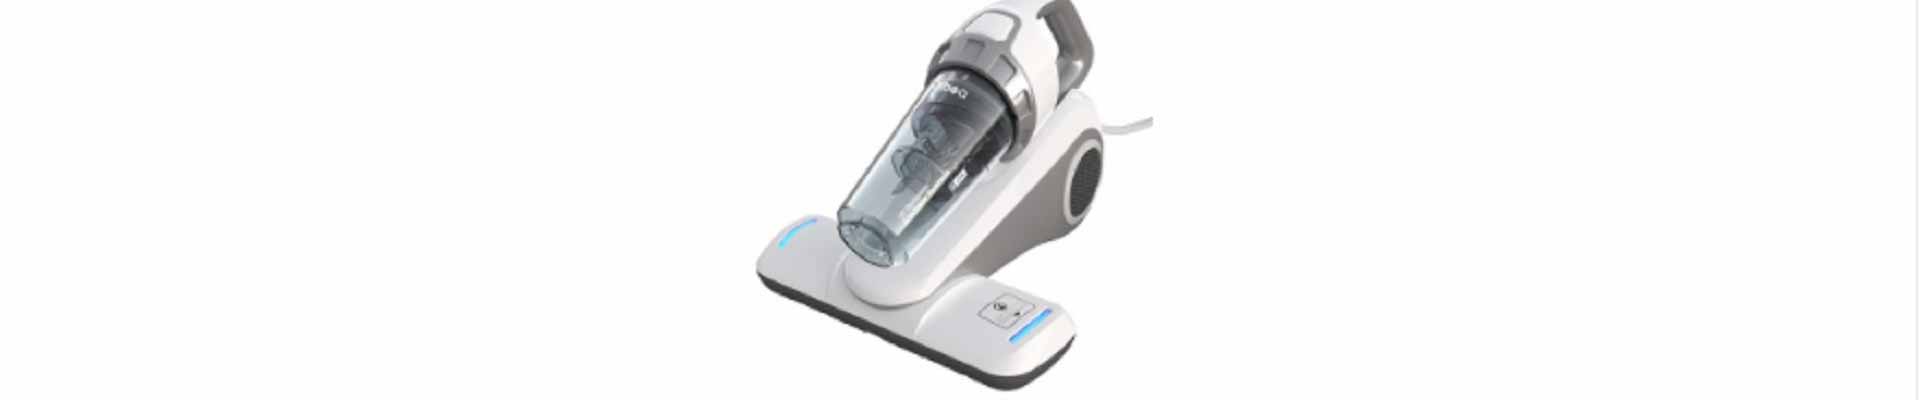 Dibea-UV-Bed-Vacuum-Cleaner